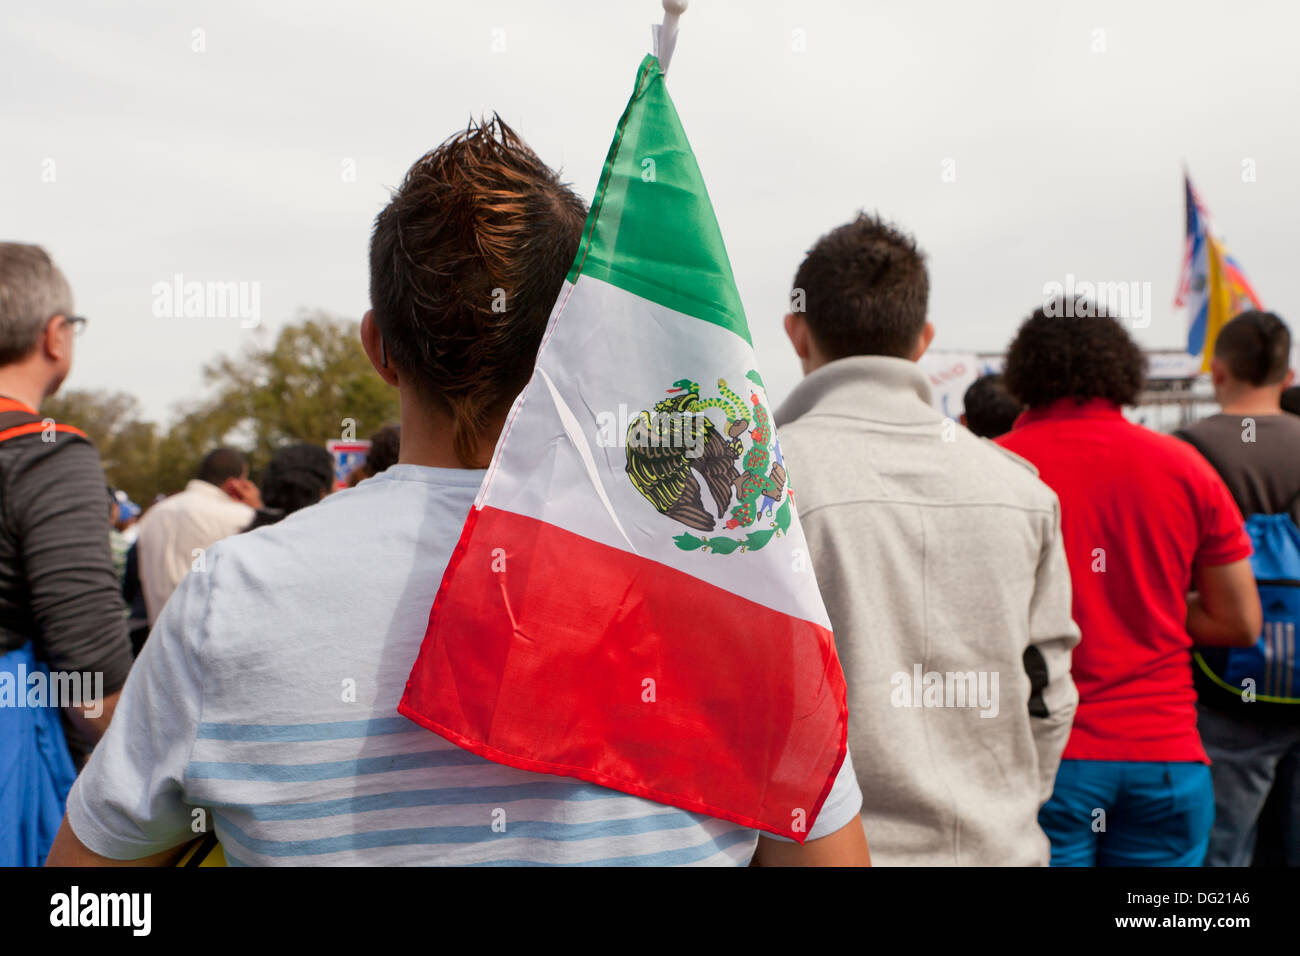 L'américano-mexicaine avec l'homme drapeau mexicain à la réforme de l'Immigration rally - Washington, DC USA Banque D'Images